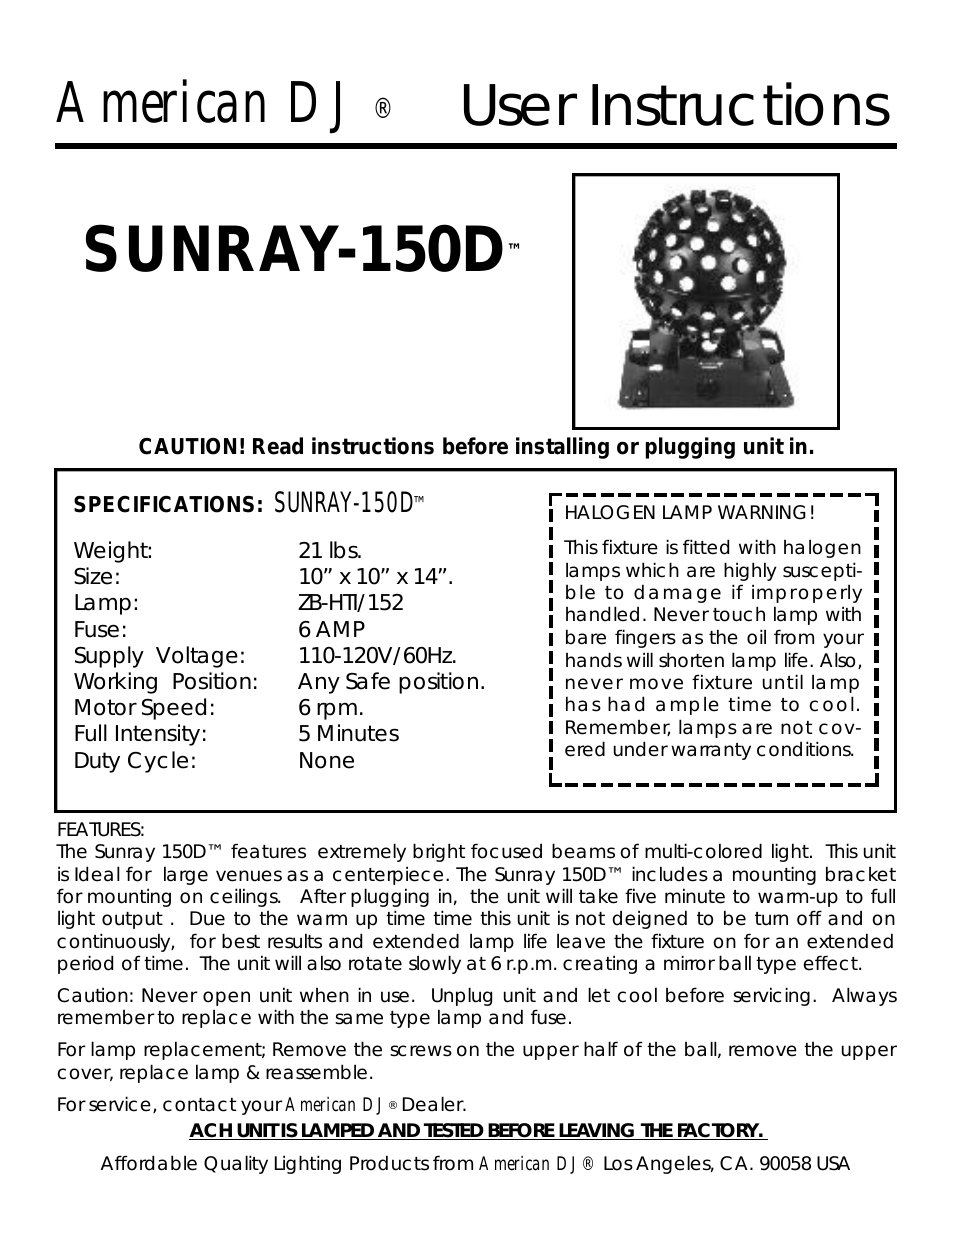 Sunray-150D